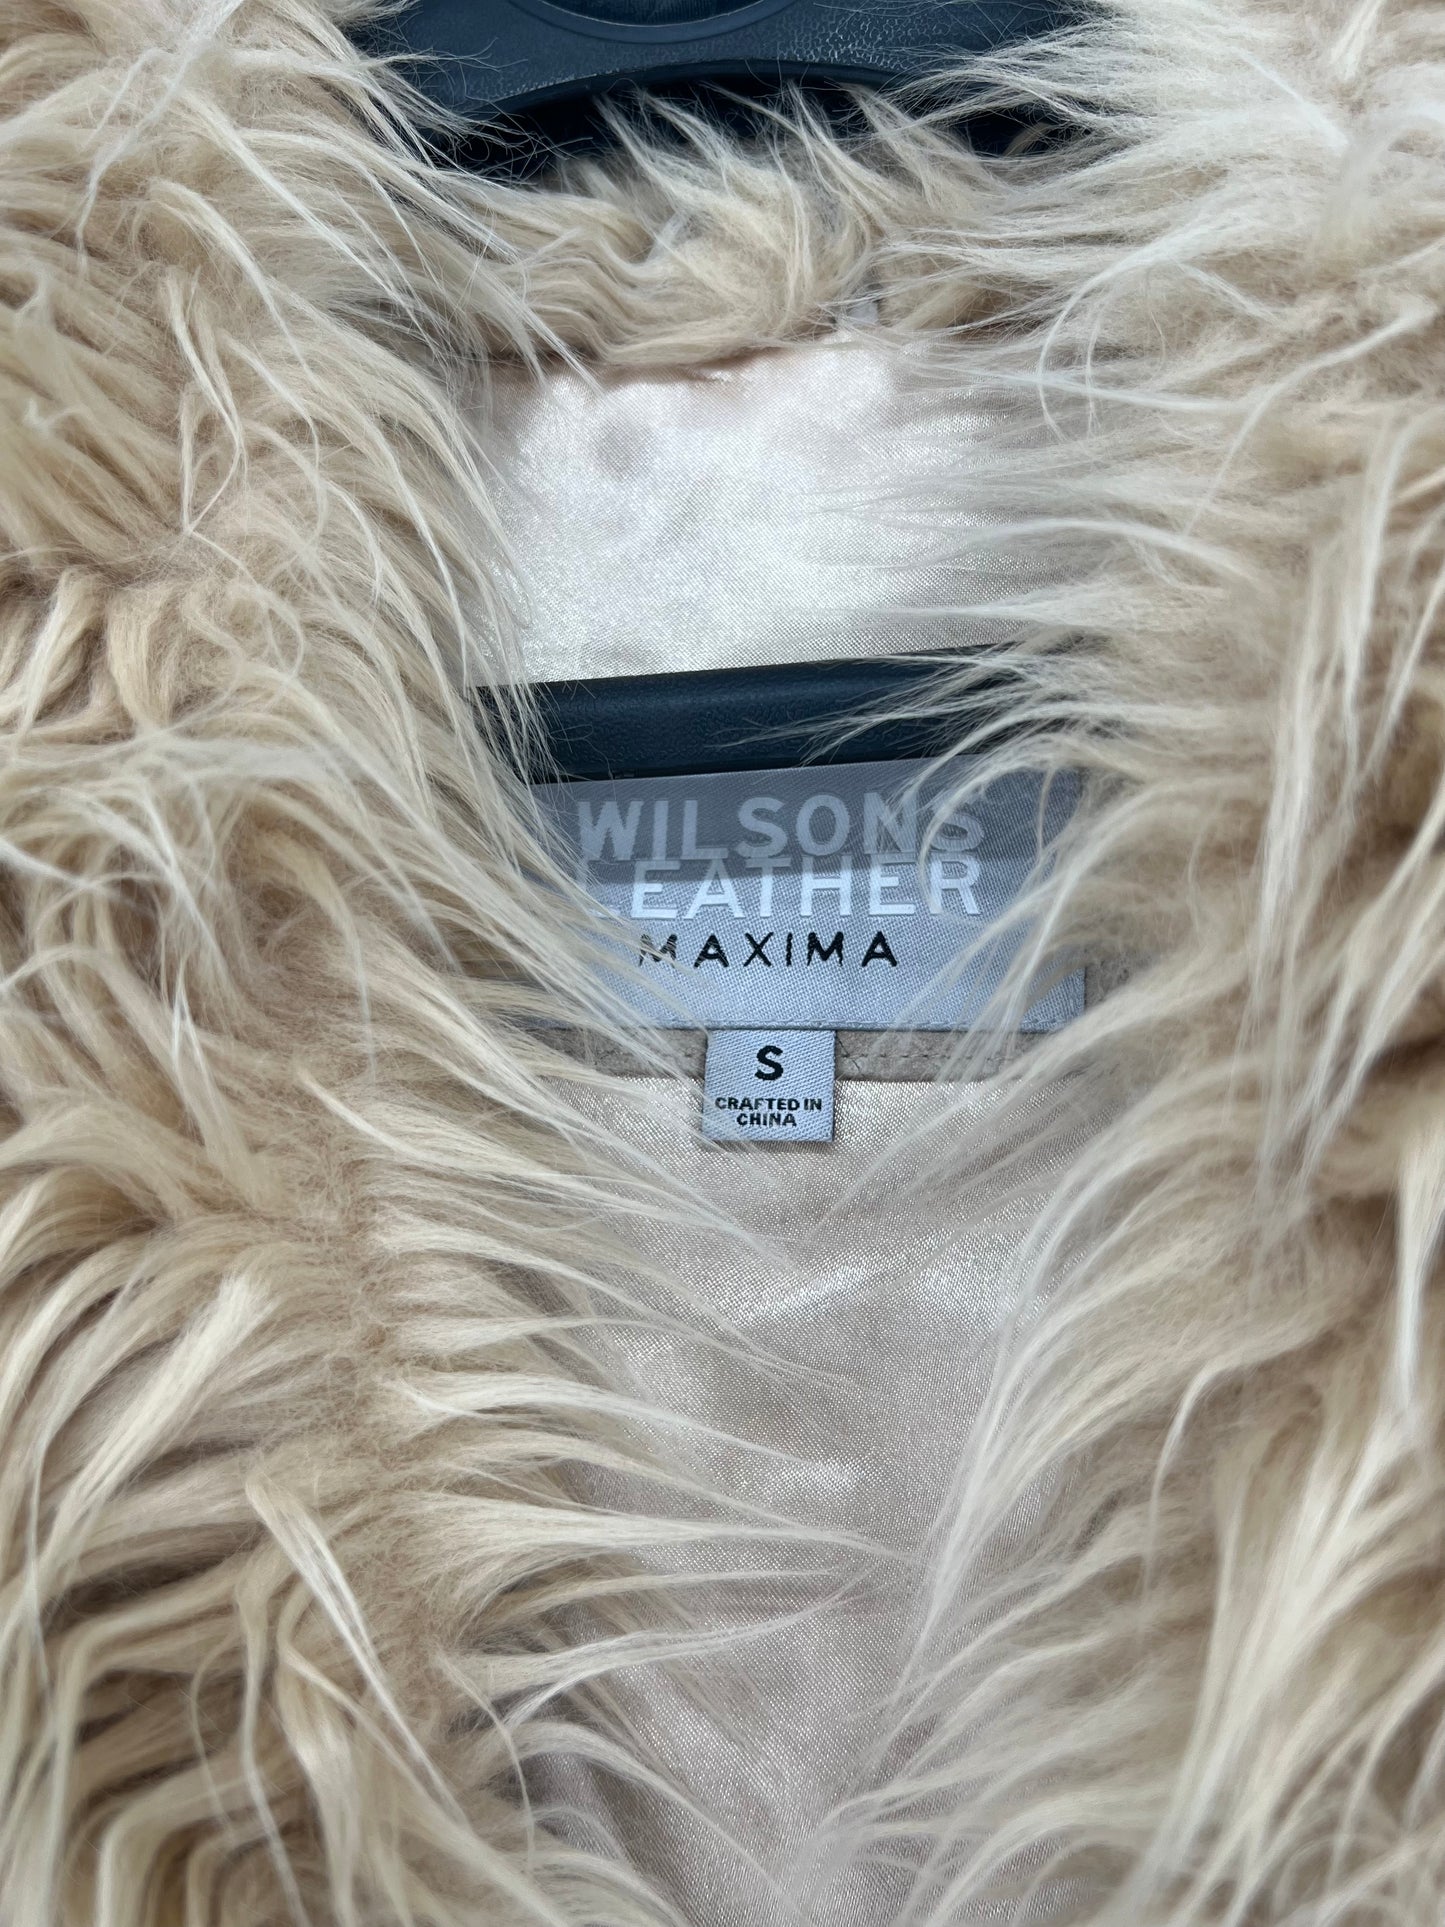 Vintage 90s Wilson’s Leather Maxima Suede Leather Floral Penny Lane Faux Fur Trim Sz: S